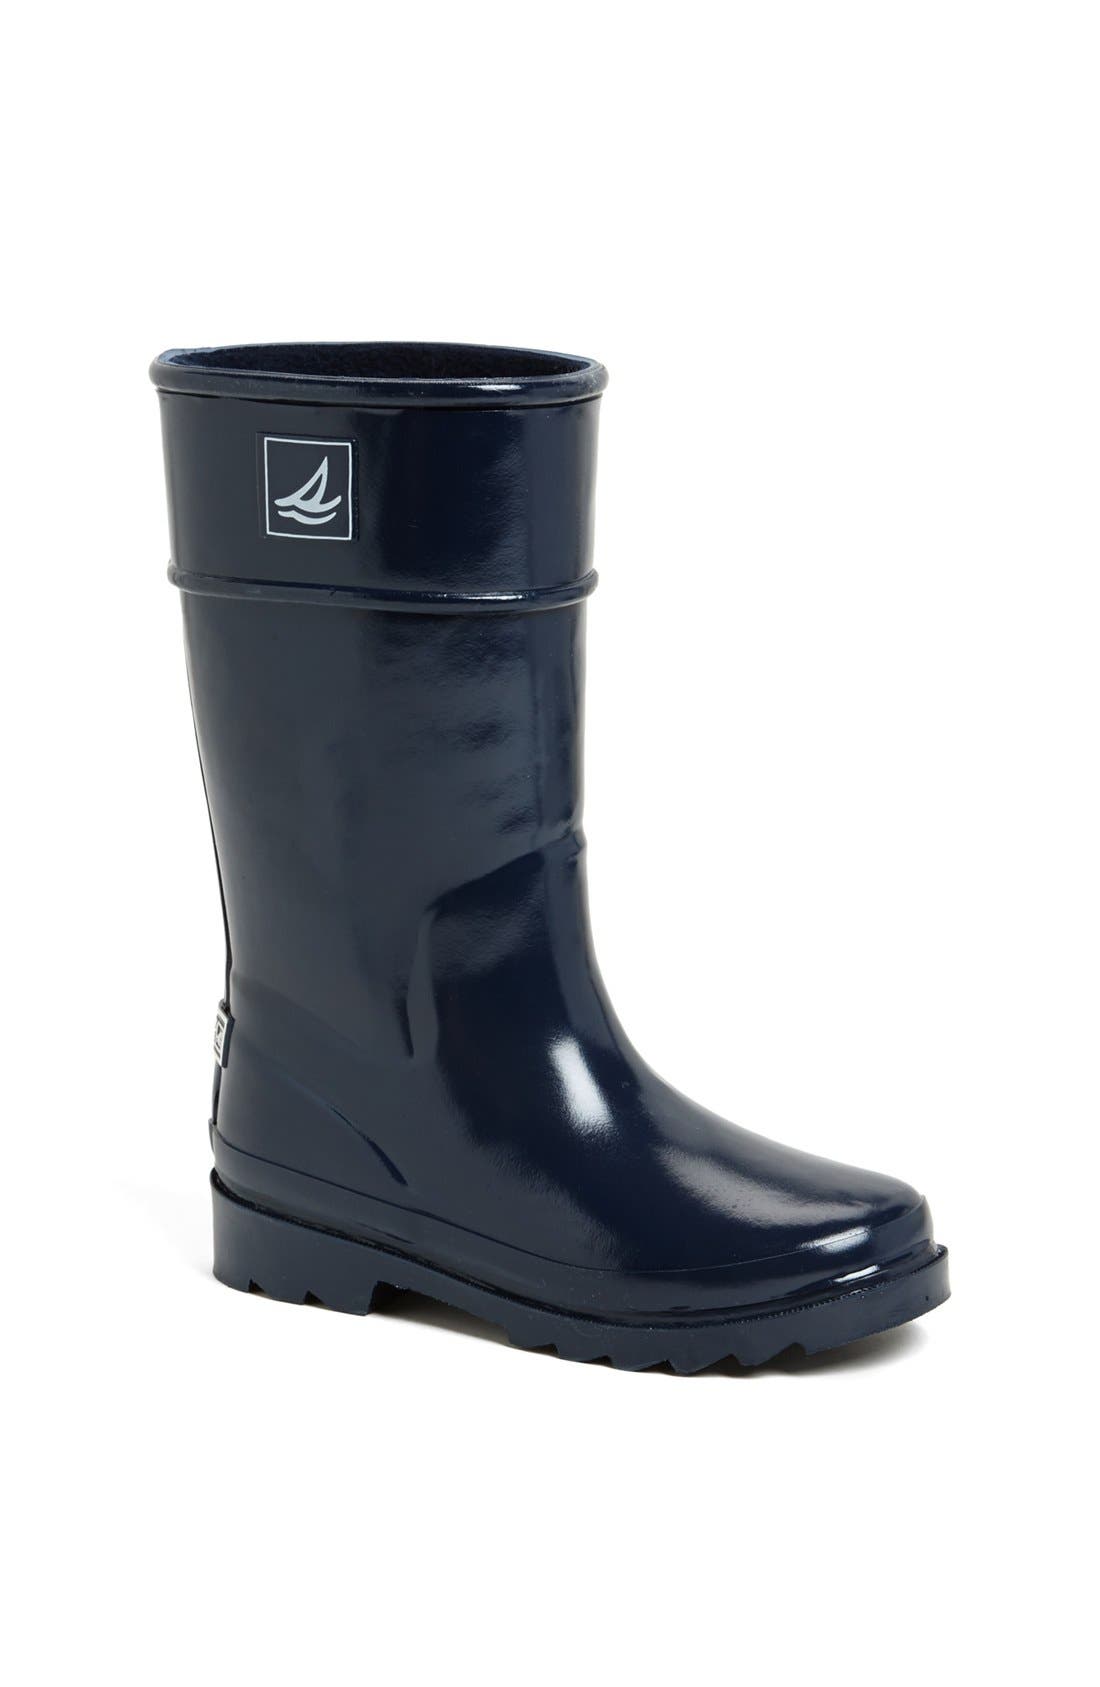 boys sperry rain boots